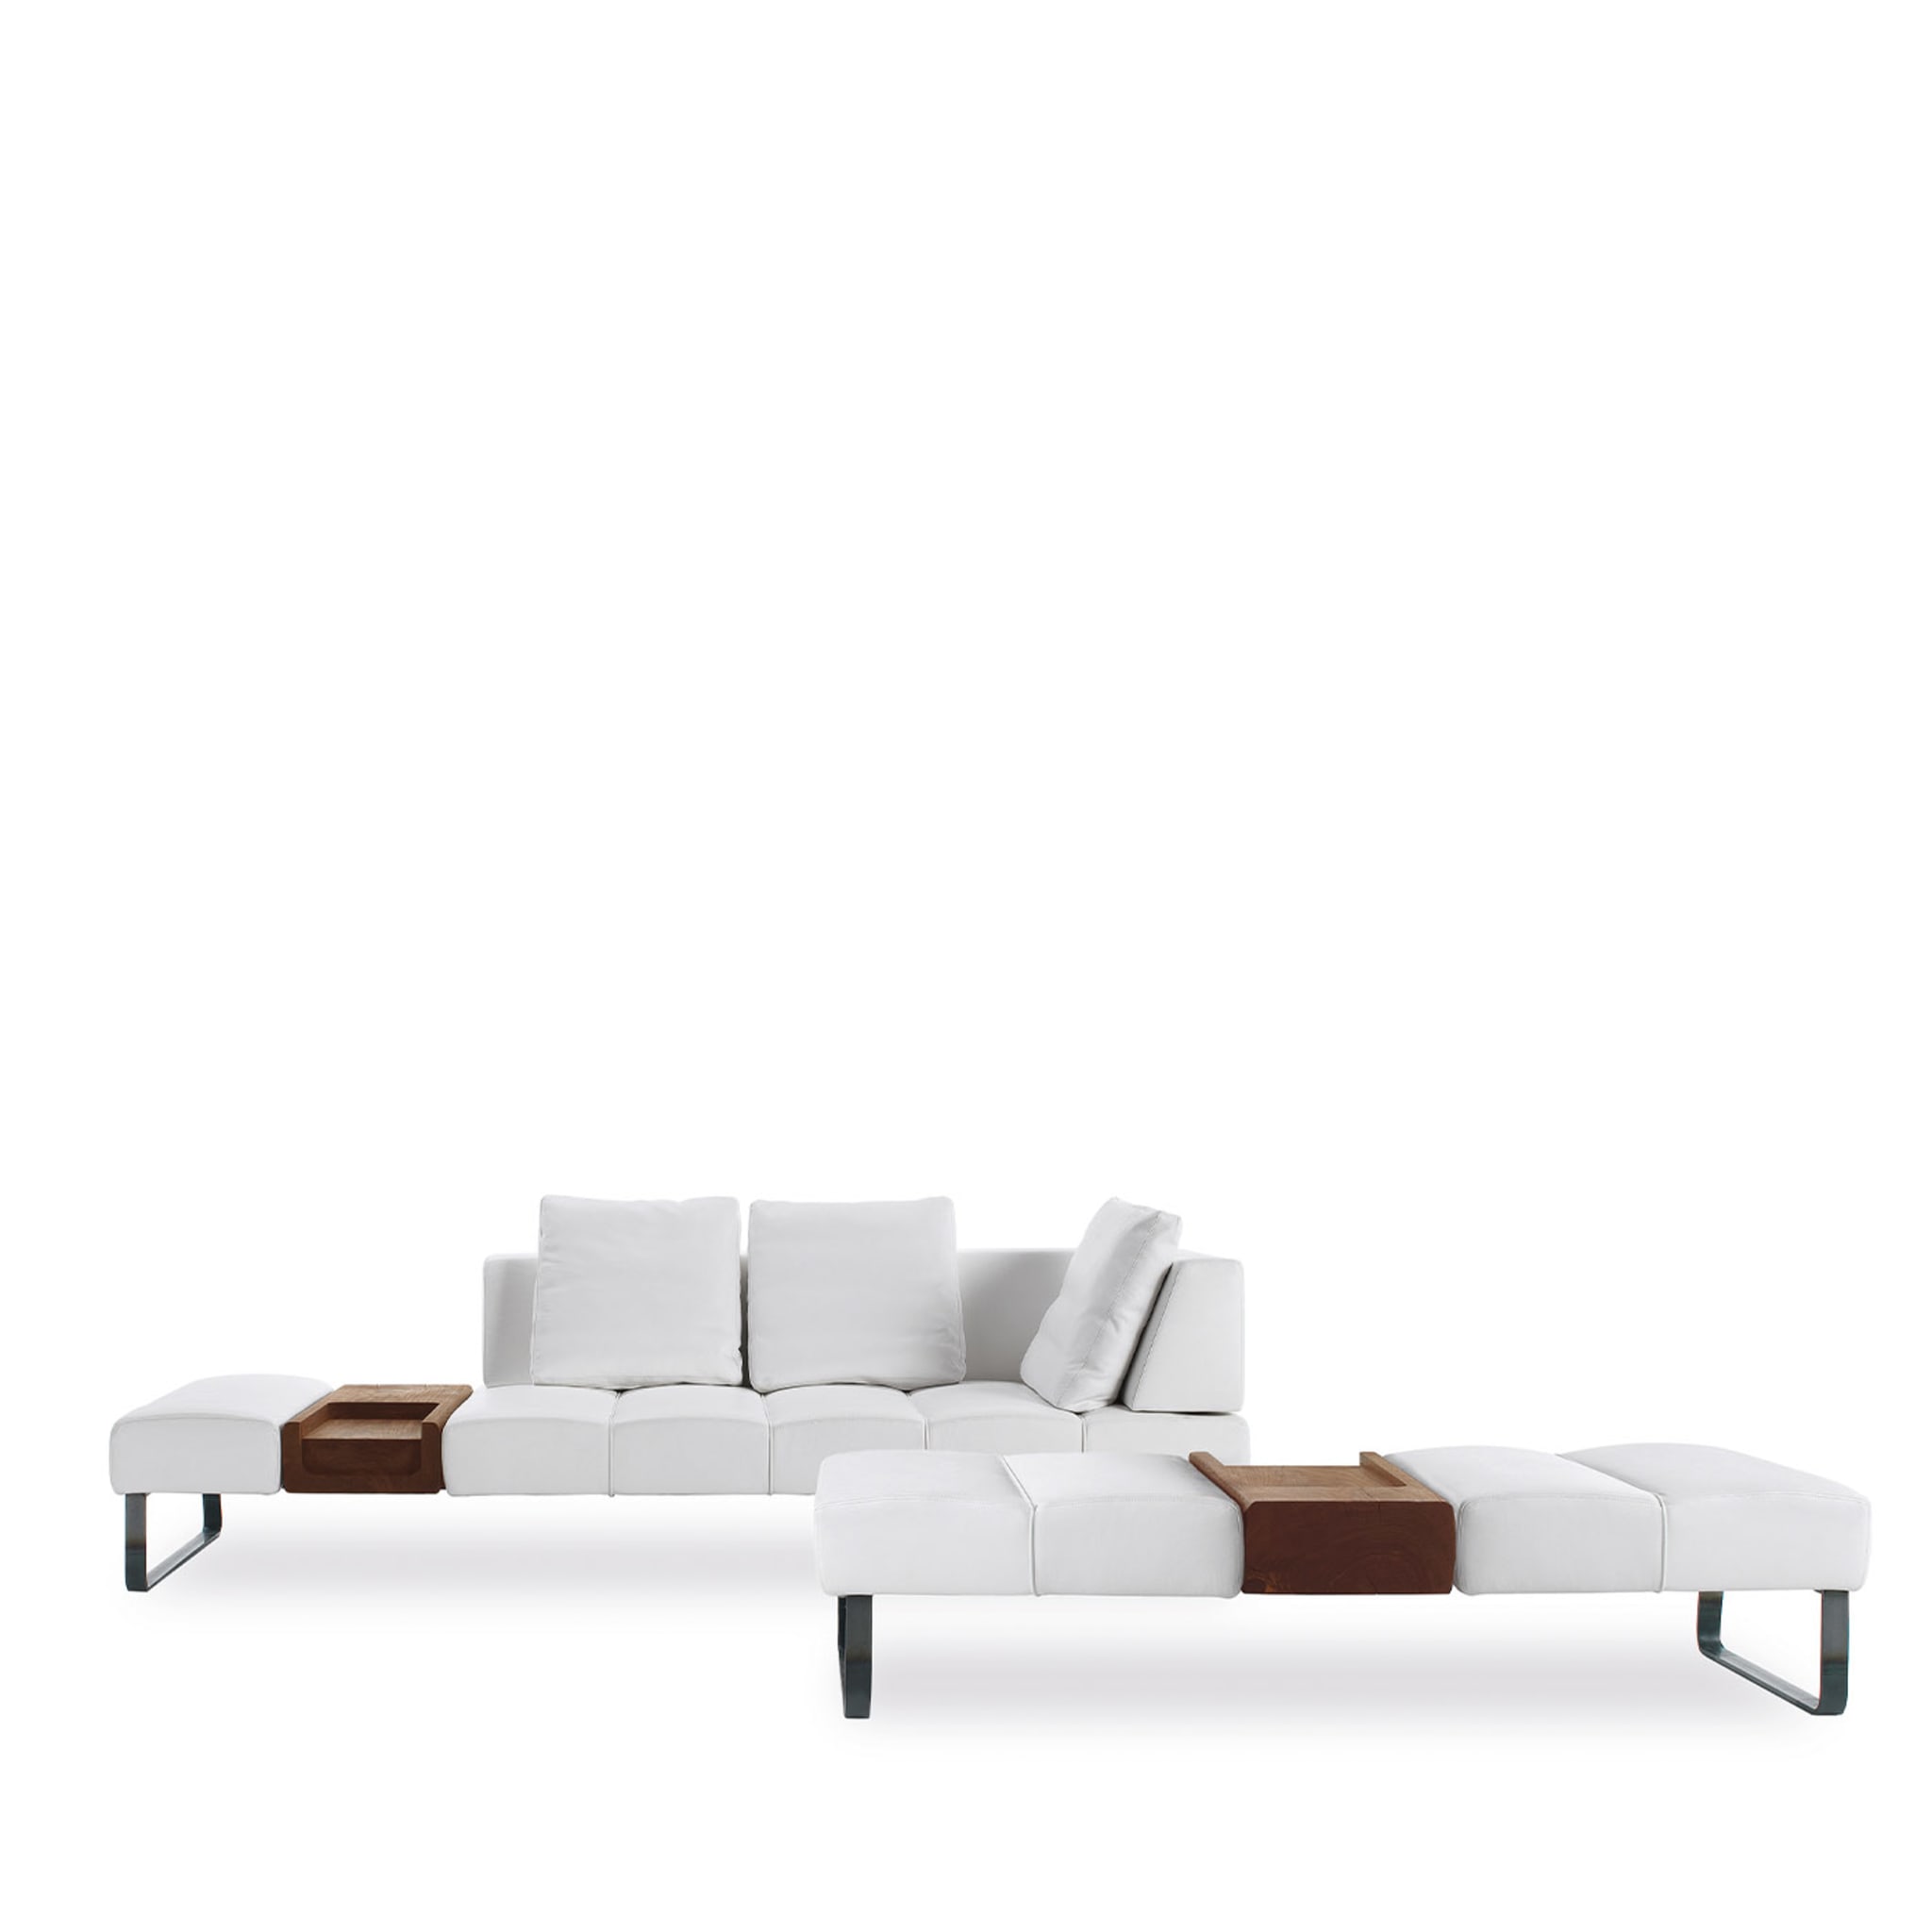 Patmos Asymmetrisches weißes sofa von Terry Dwan - Alternative Ansicht 1